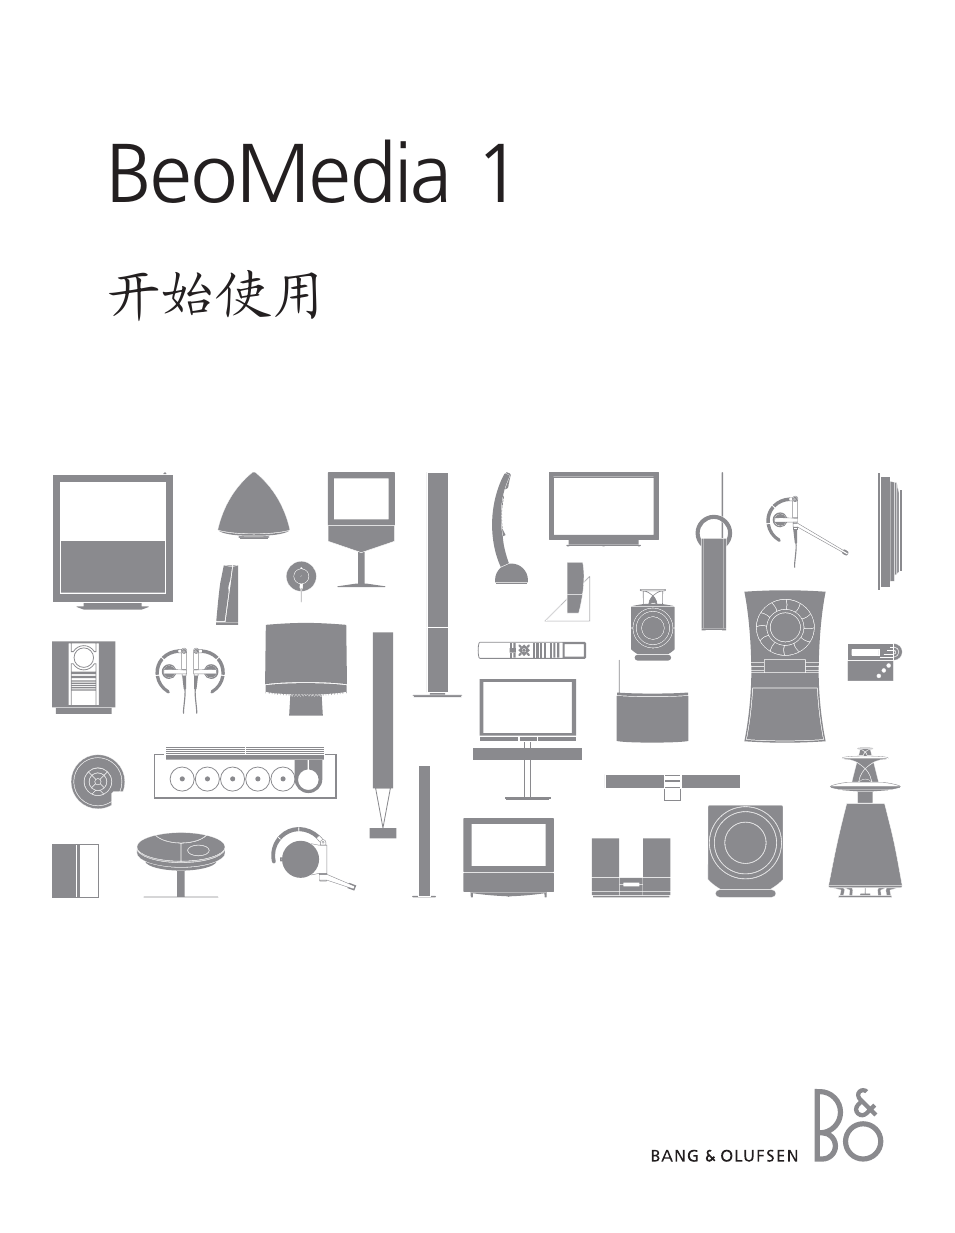 BeoMedia 1 - User Guide